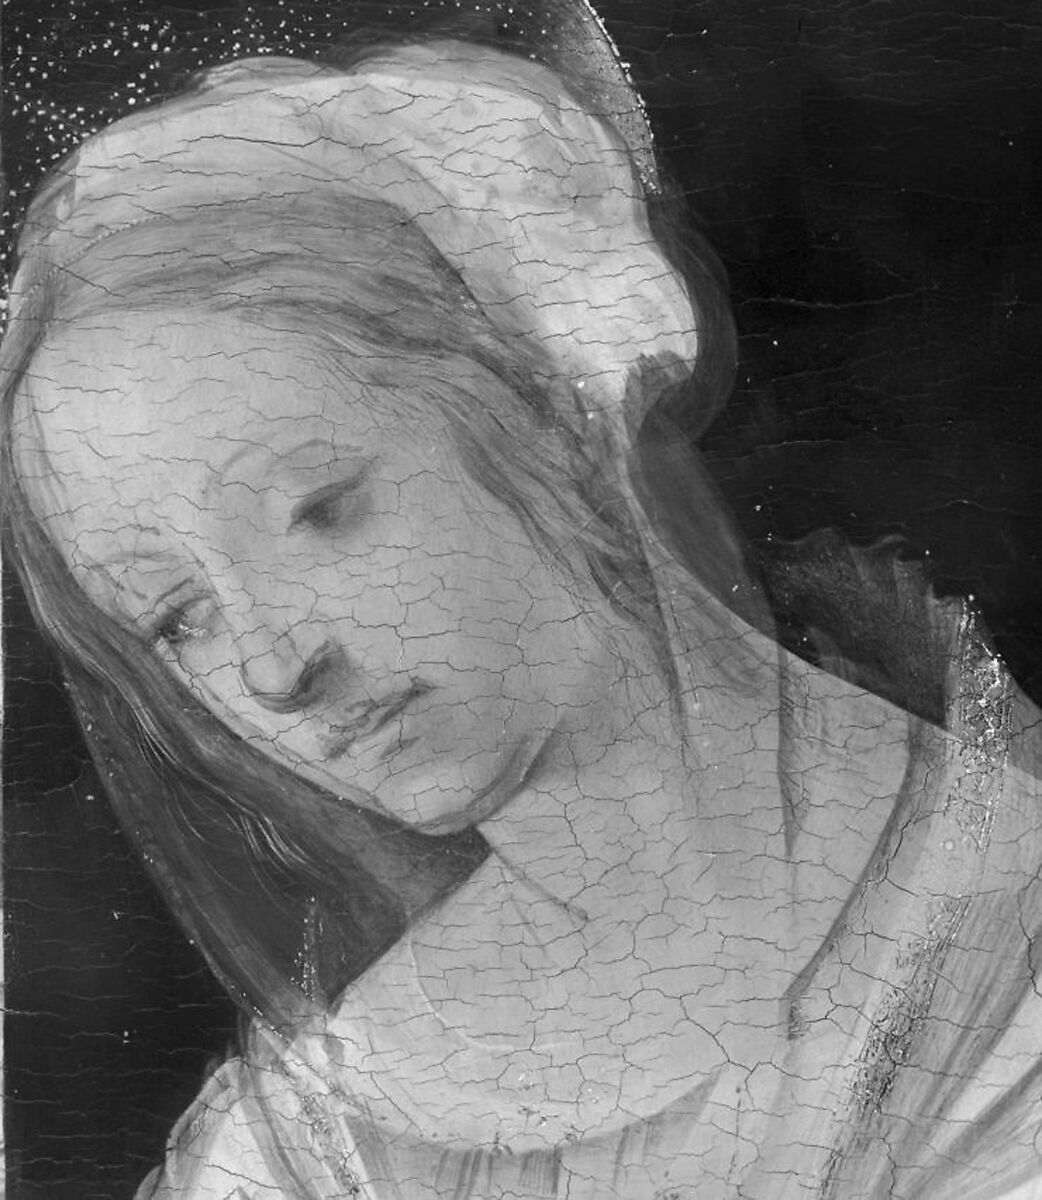 【聖母子像　Madonna and Child】イタリア‐ルネサンス期‐画家フィリッピノ・リッピ（Filippino Lippi）